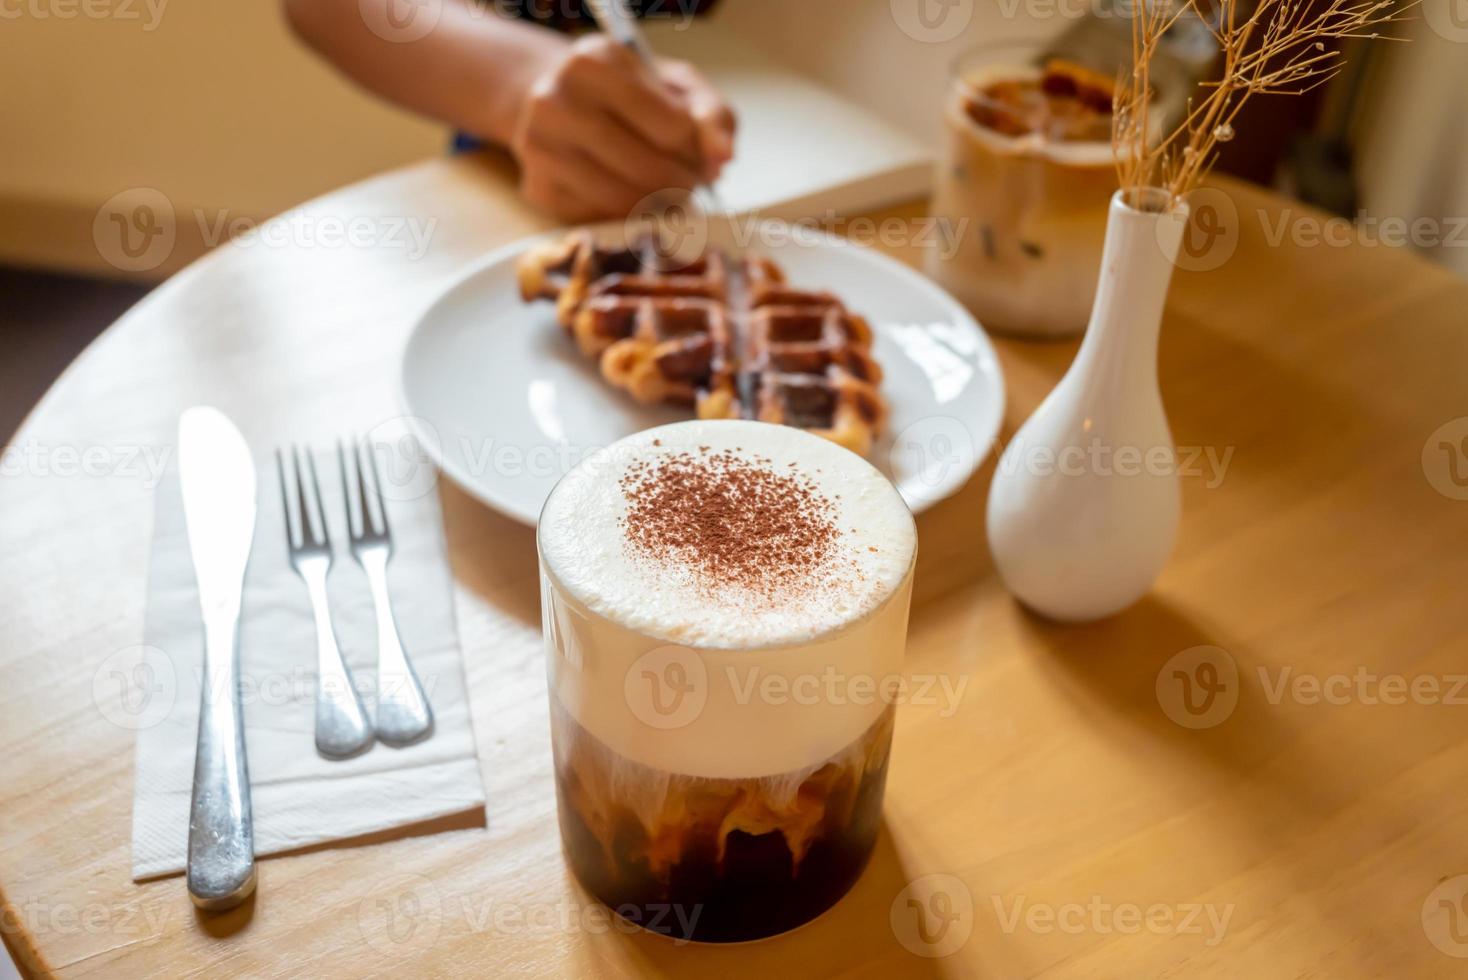 en söndagsmorgonmåltid på café, två koppar kaffe, honungslatte och eispanner americano serveras med våffla på tallrik, dekorerad med med vas. foto